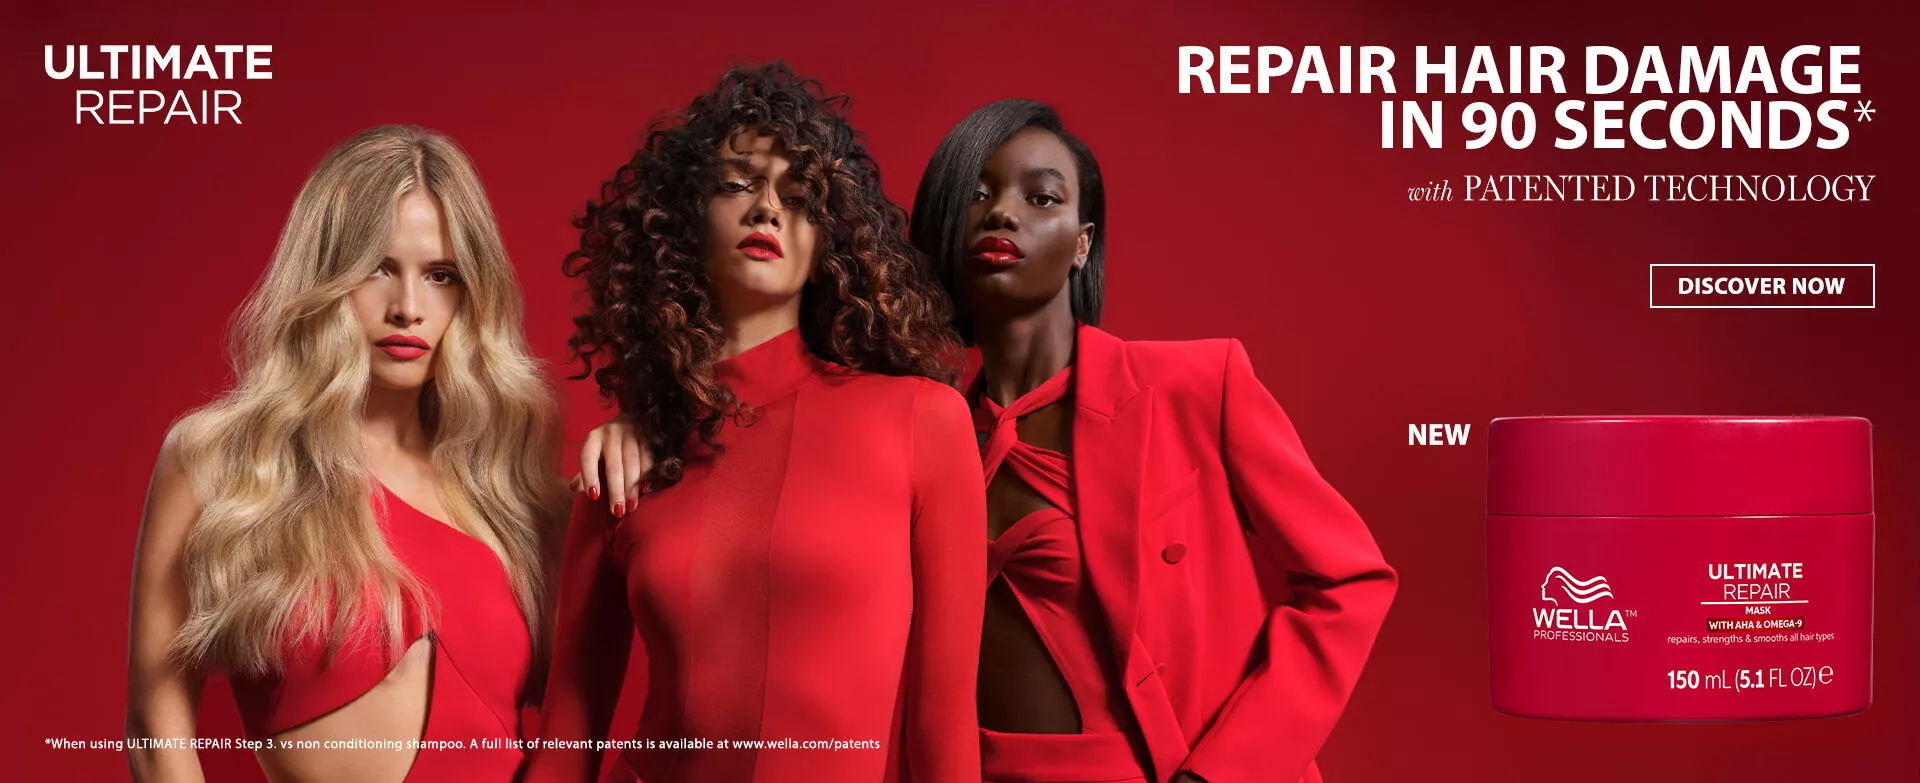 Billede af tre modeller iført rødt ved siden af en rød flaske med Ultimate Repair Mask til ødelagt hår fra Wella Professionals